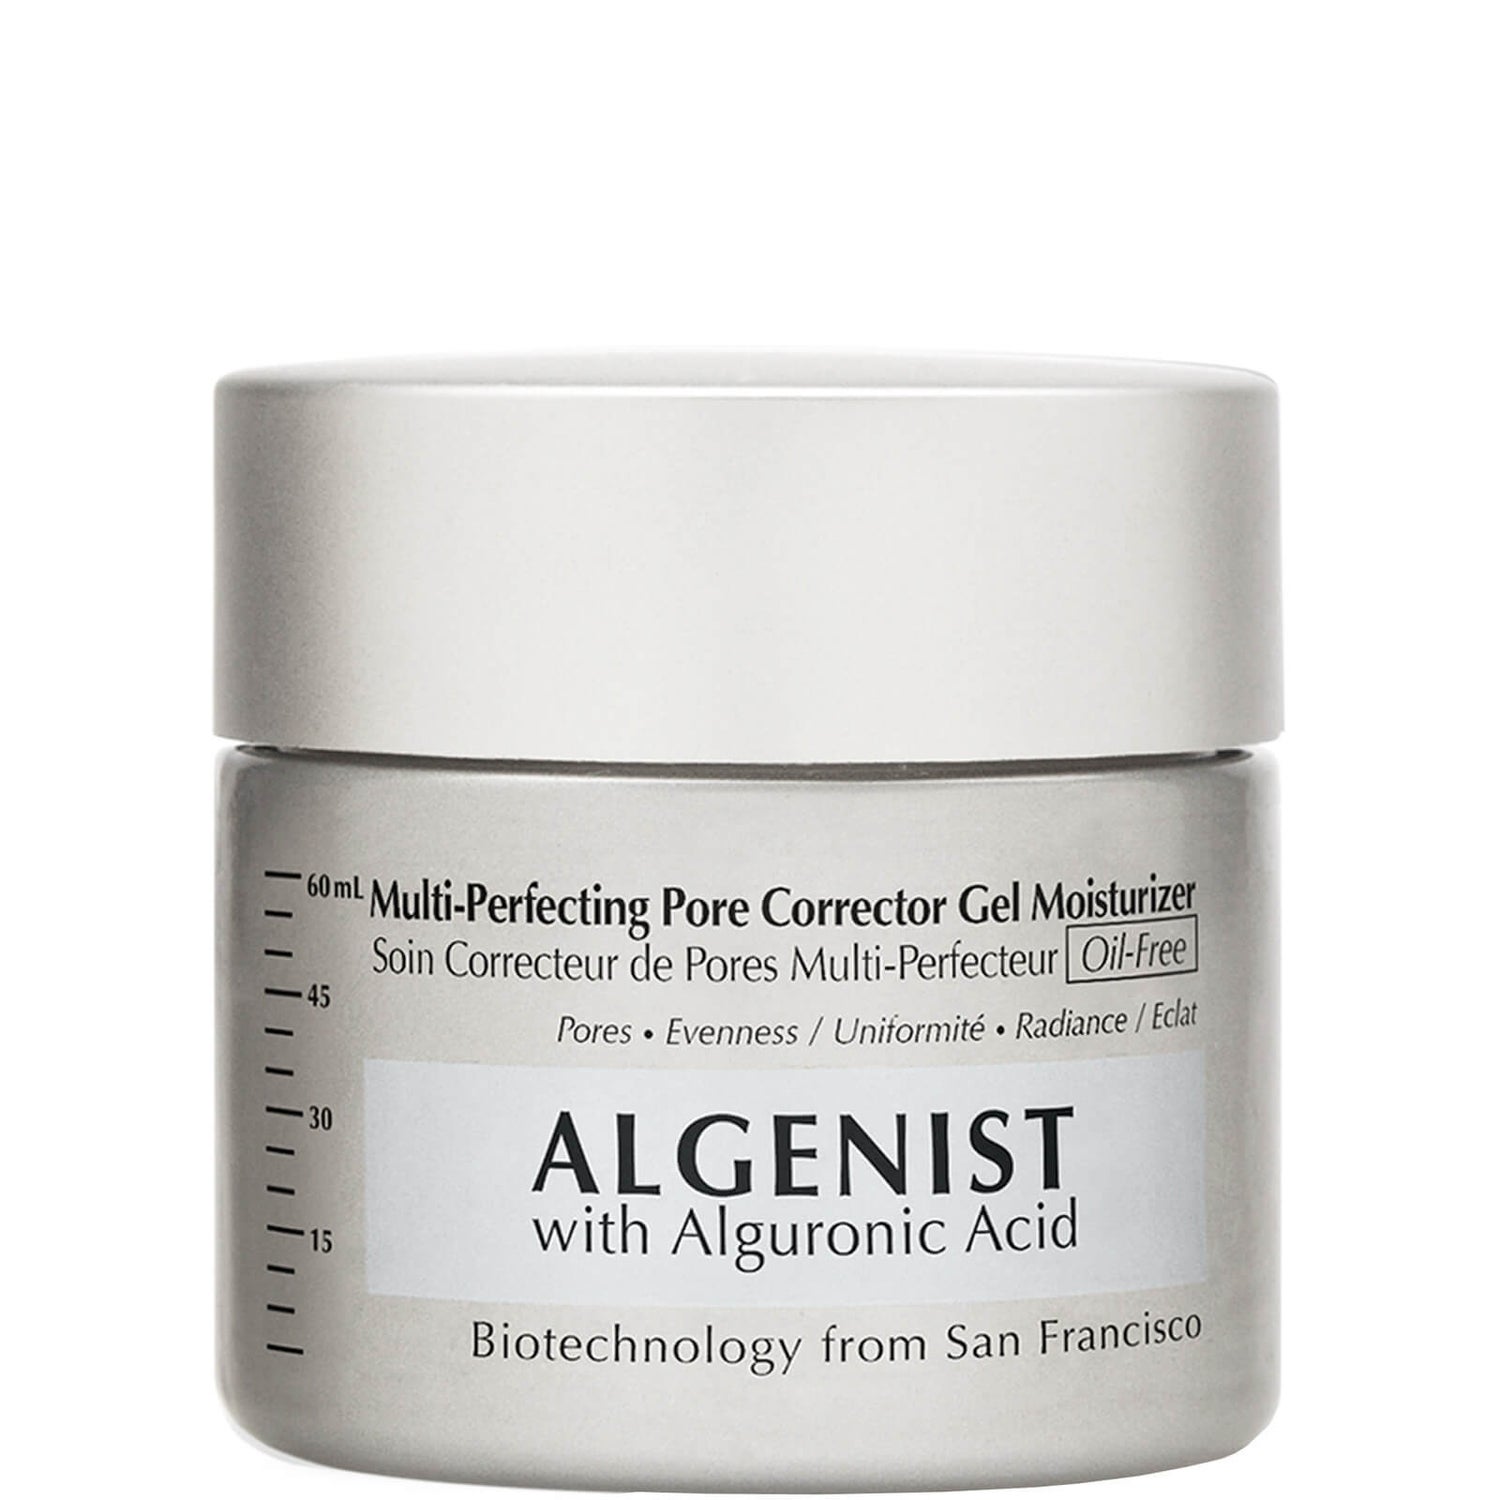 Crema hidratante en gel correctora de poros Multi-Perfecting de ALGENIST 60 ml